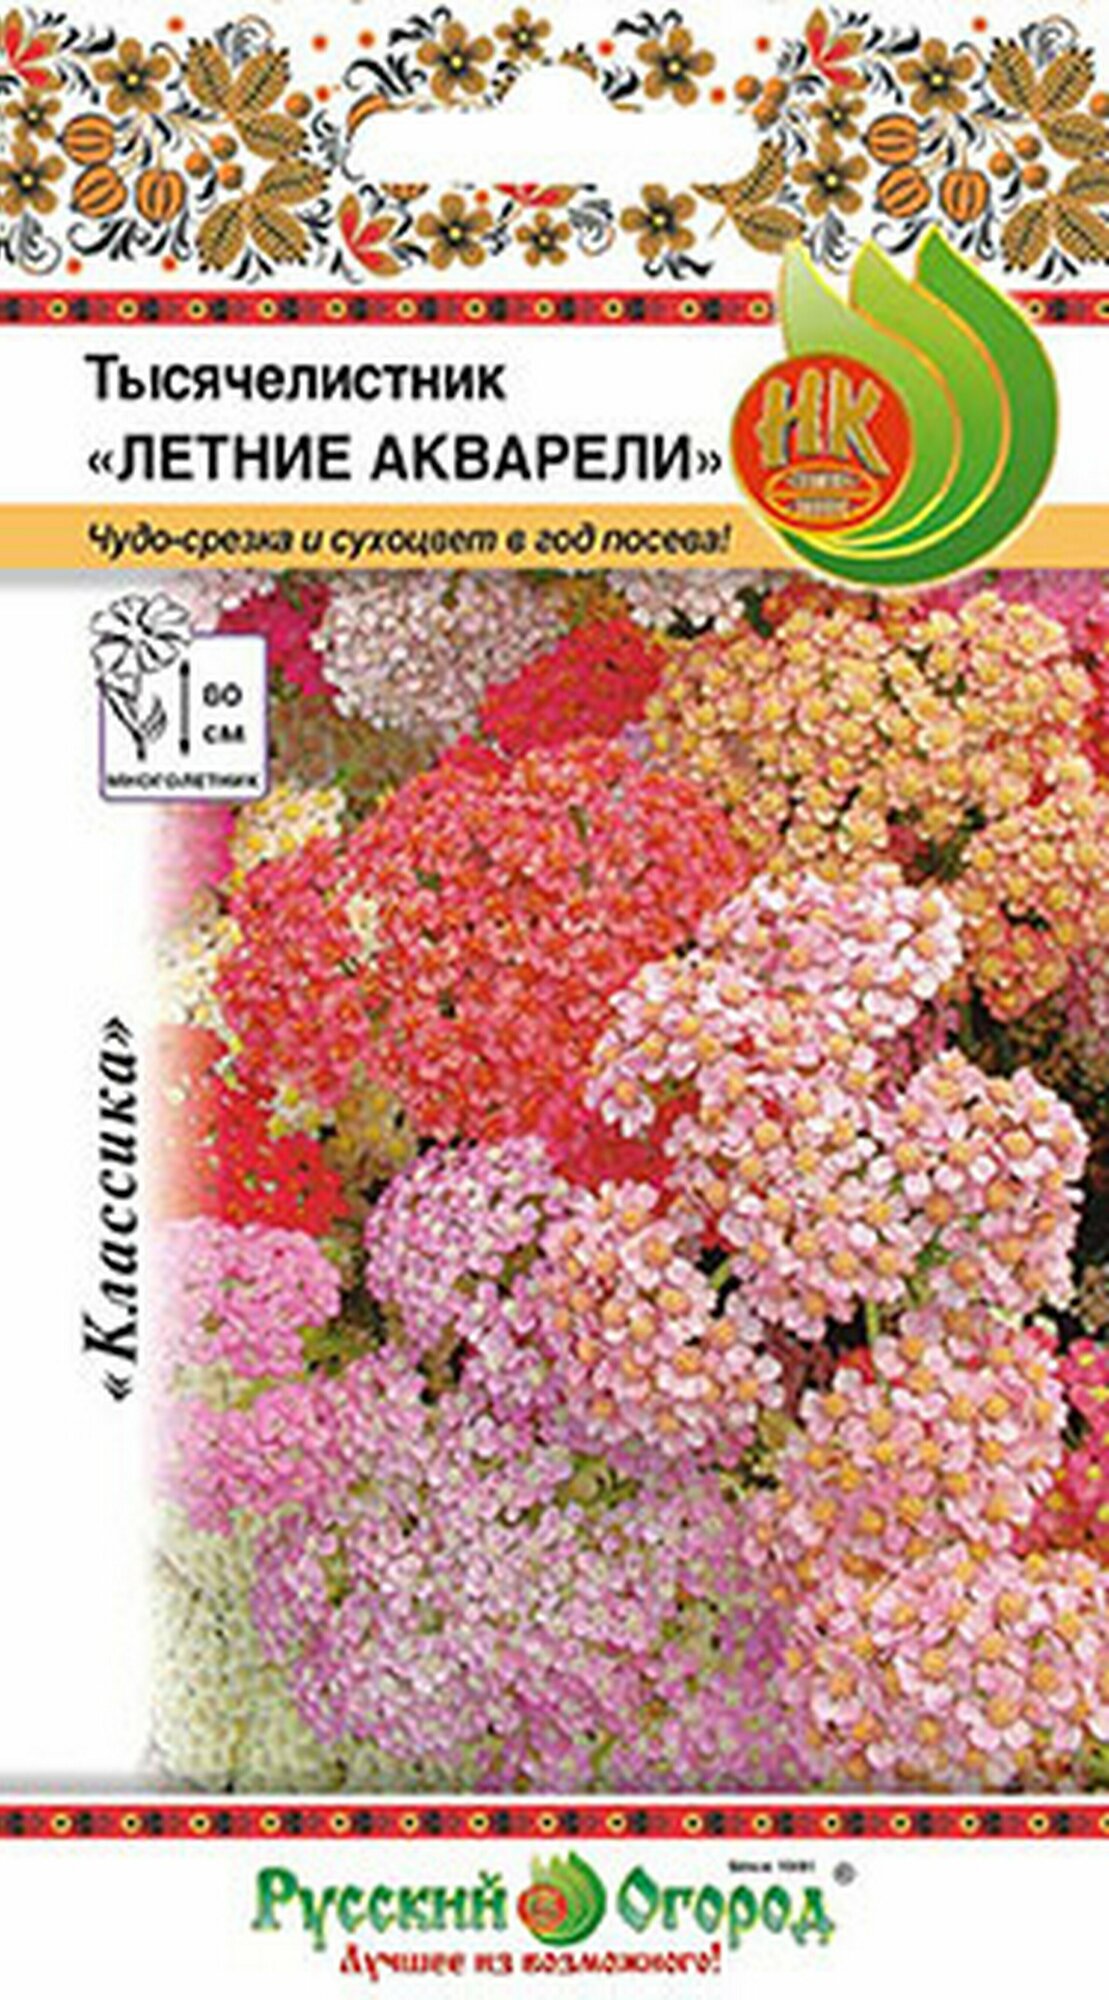 Семена Тысячелистник Летние Акварели смесь 0.02 грамма семян Русский Огород